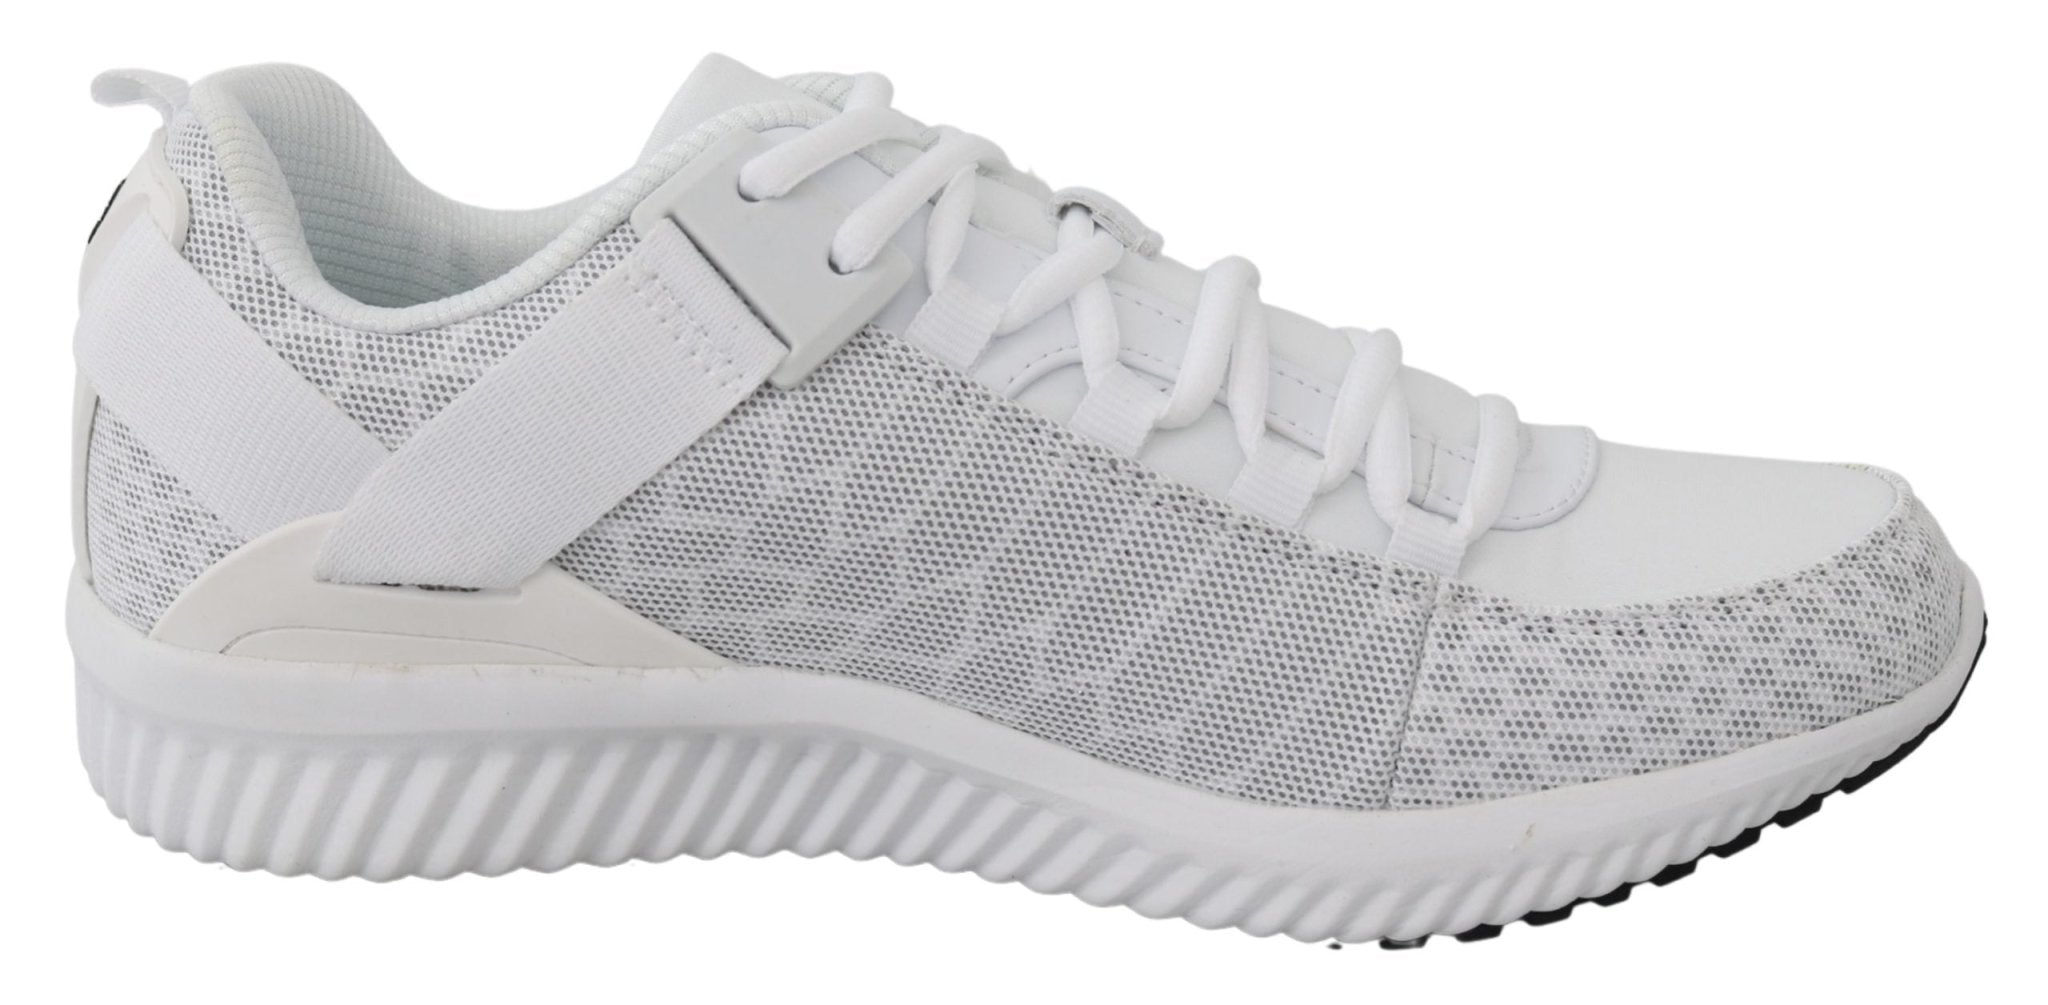 Plein Sport White Polyester Adrian Sneakers Shoes - Fizigo